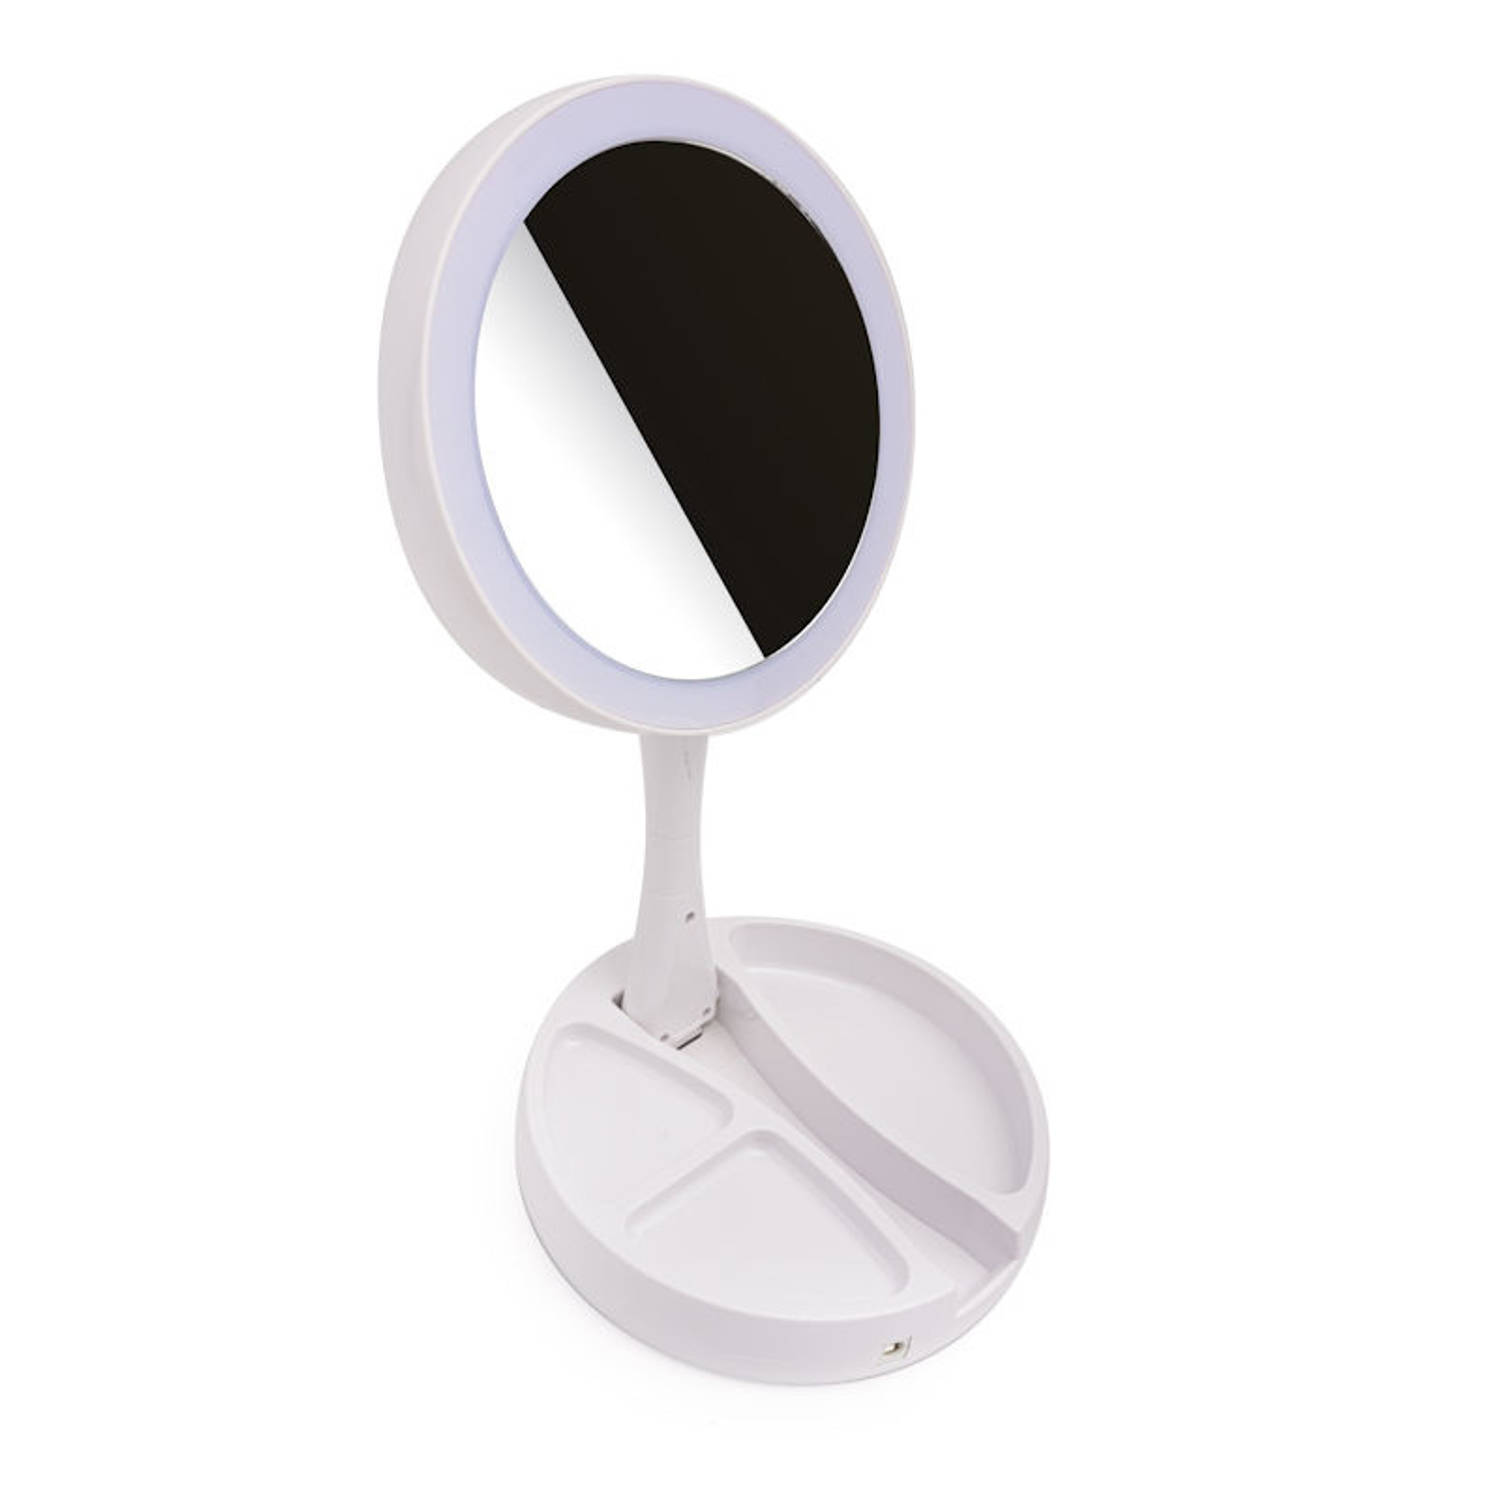 Vergelijking Boren Voorkeur Inklapbare Make Up Spiegel met LED verlichting - 10x Vergroting - | Blokker